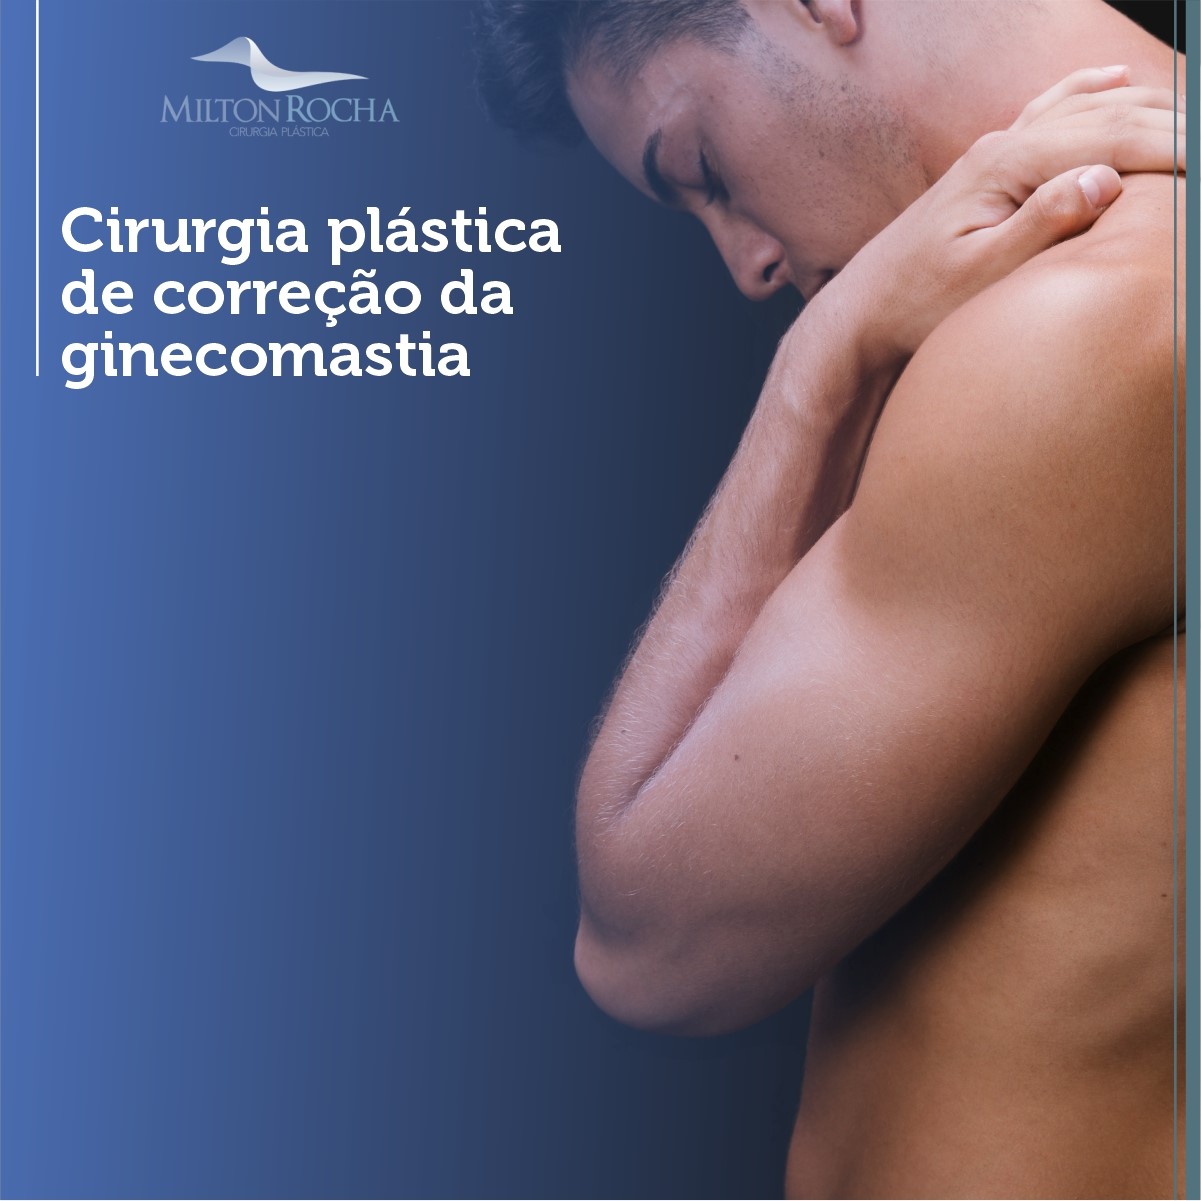 Read more about the article Cirurgia Plástica Recife – Ginecomastia – Cirurgia Plástica de correção da ginecomastia.